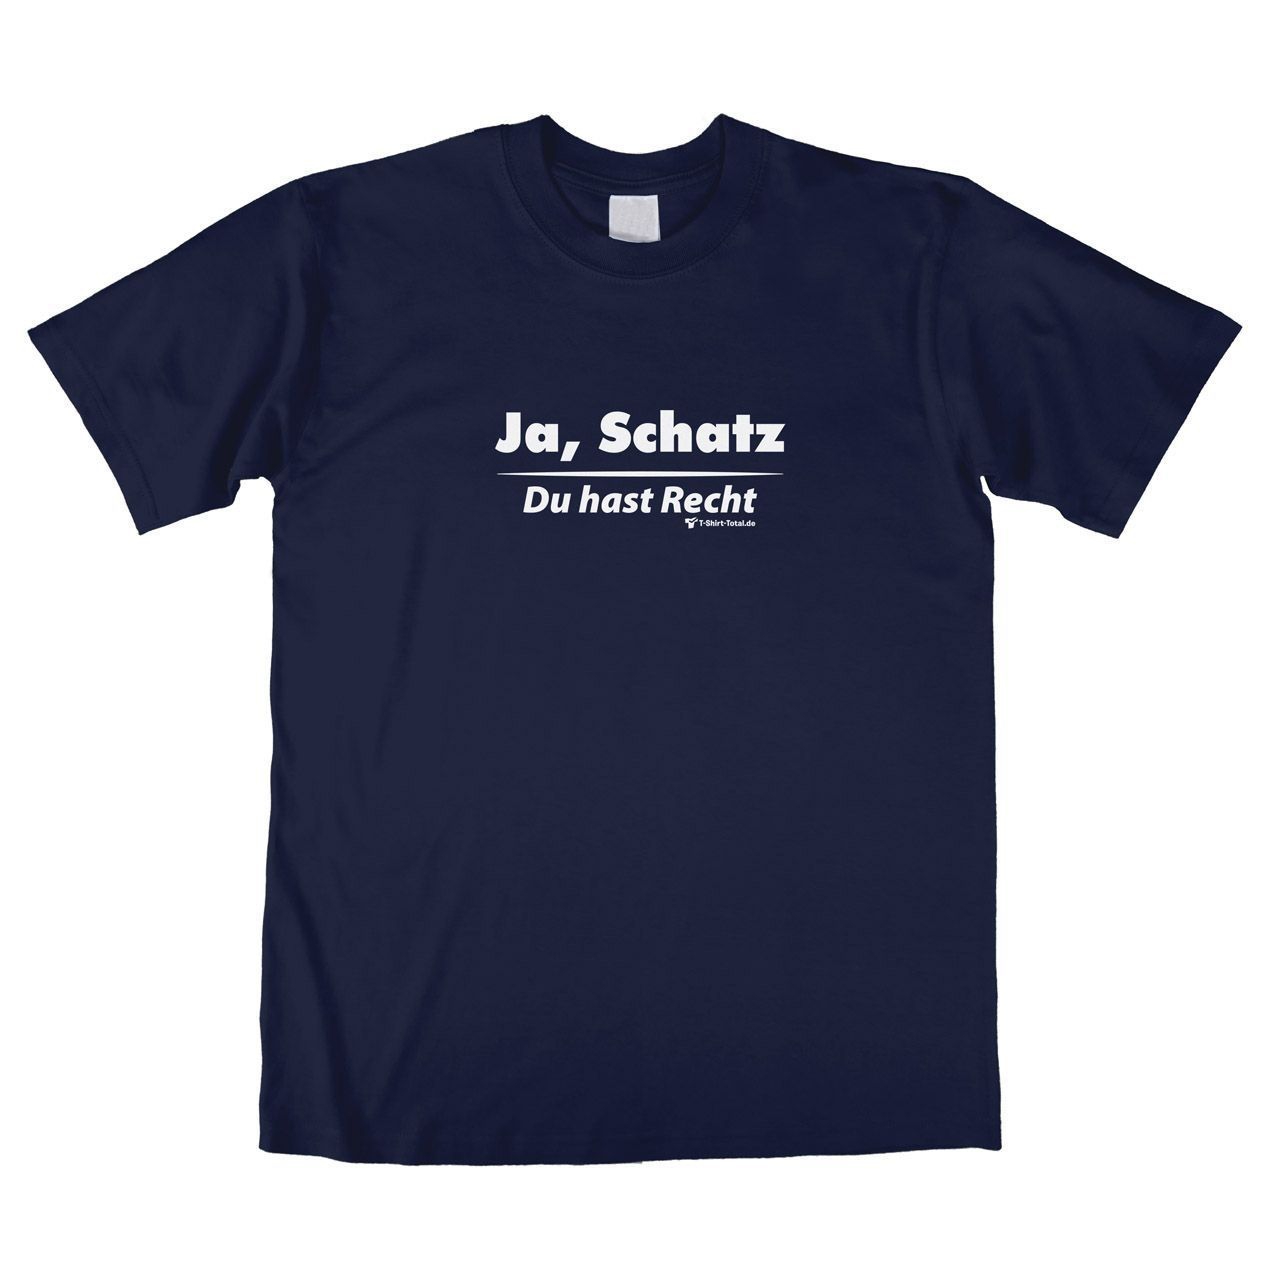 Ja Schatz Unisex T-Shirt navy Extra Large